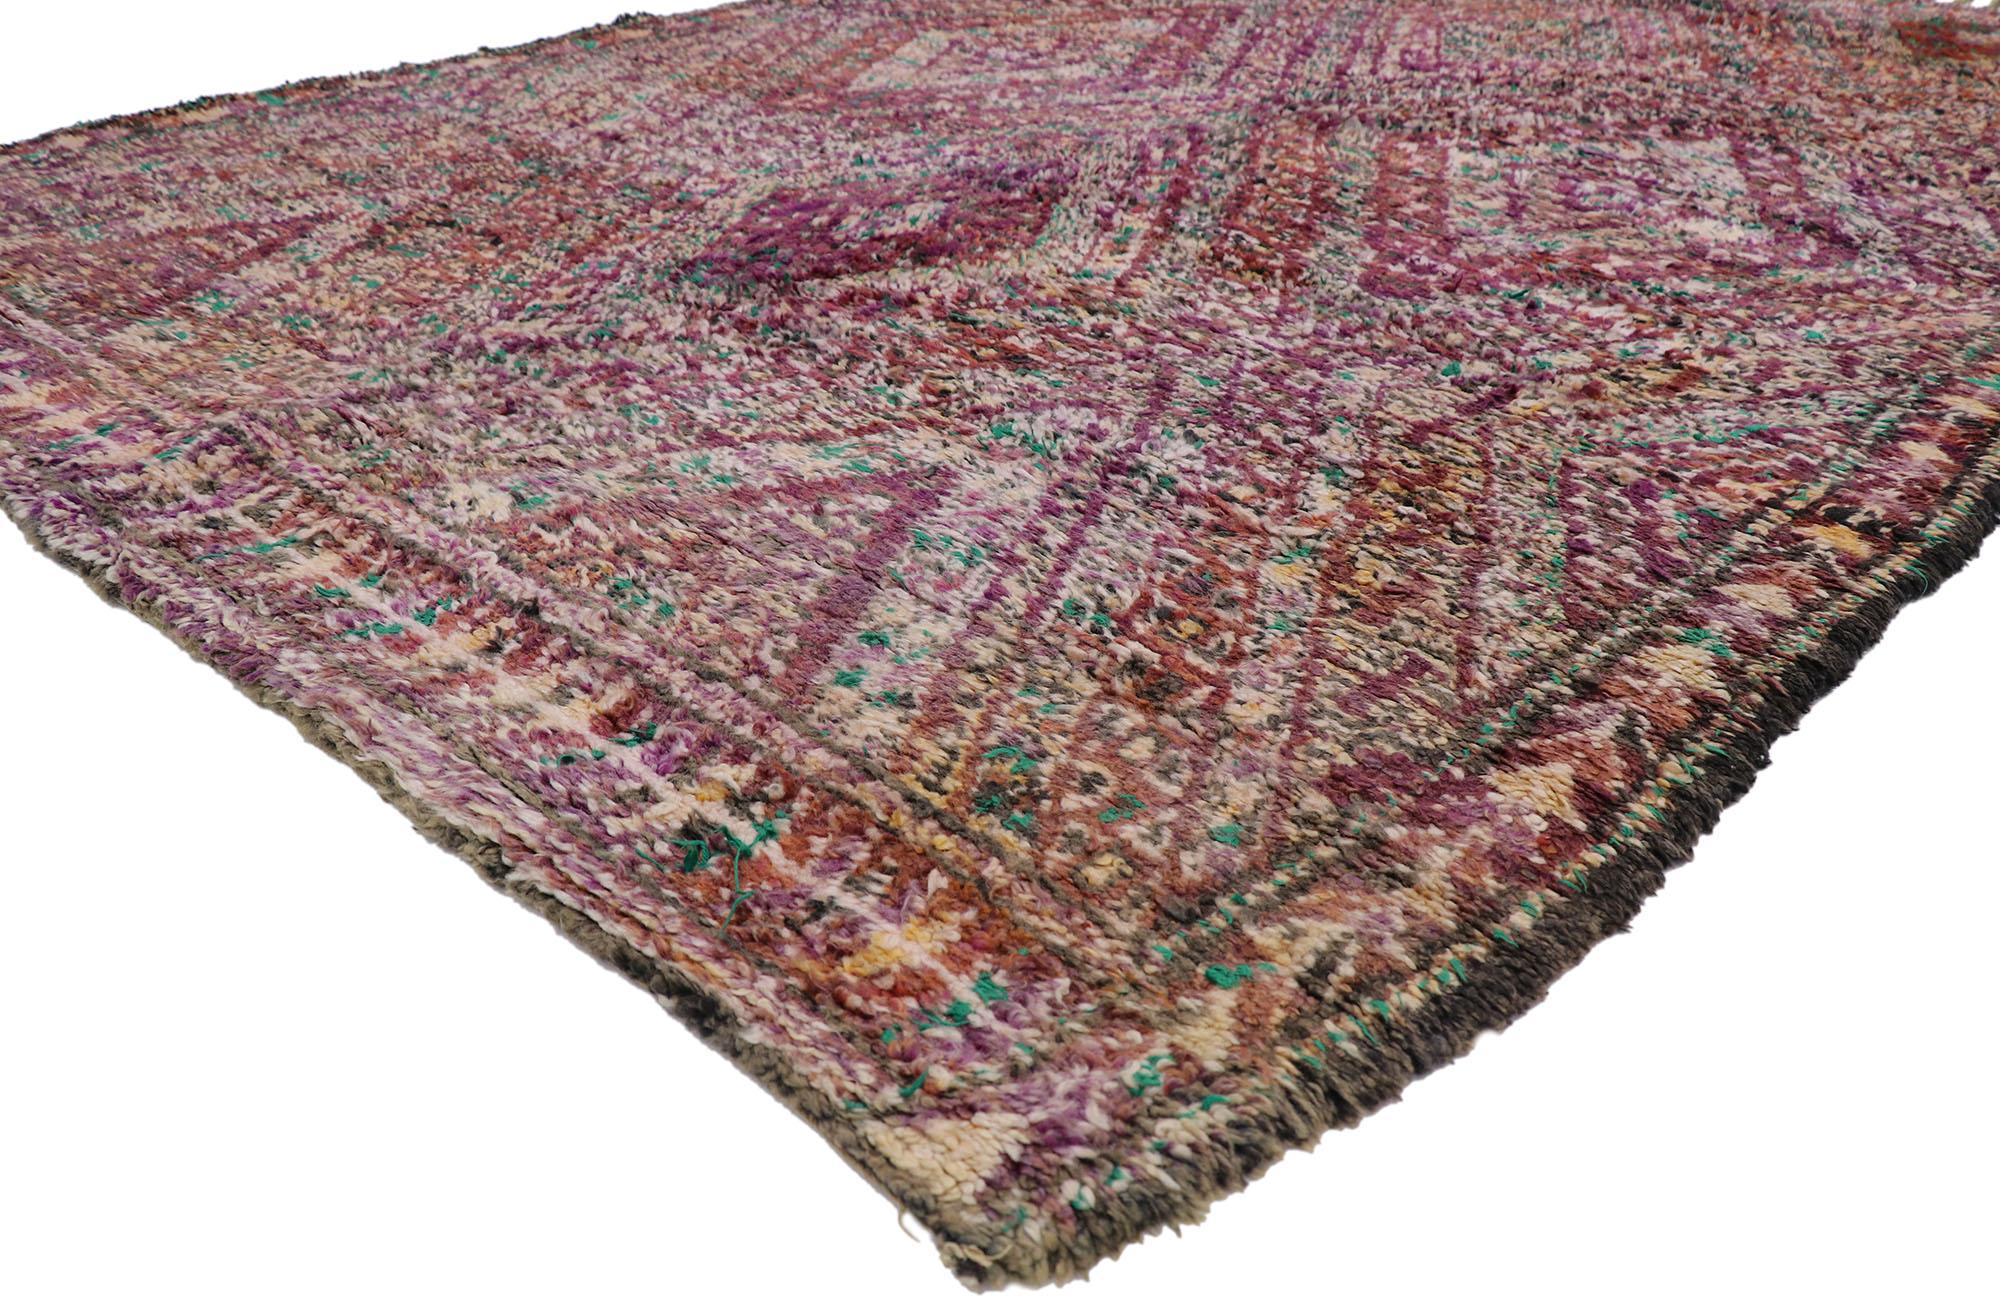 21222 Vintage Berber Beni M'Guild Marokkanischer Teppich mit Bohemian Style 06'10 x 10'08. Dieser handgeknüpfte marokkanische Beni M'Guild-Teppich aus alter Berberwolle besticht durch sein kühnes, ausdrucksstarkes Design, seine unglaublichen Details